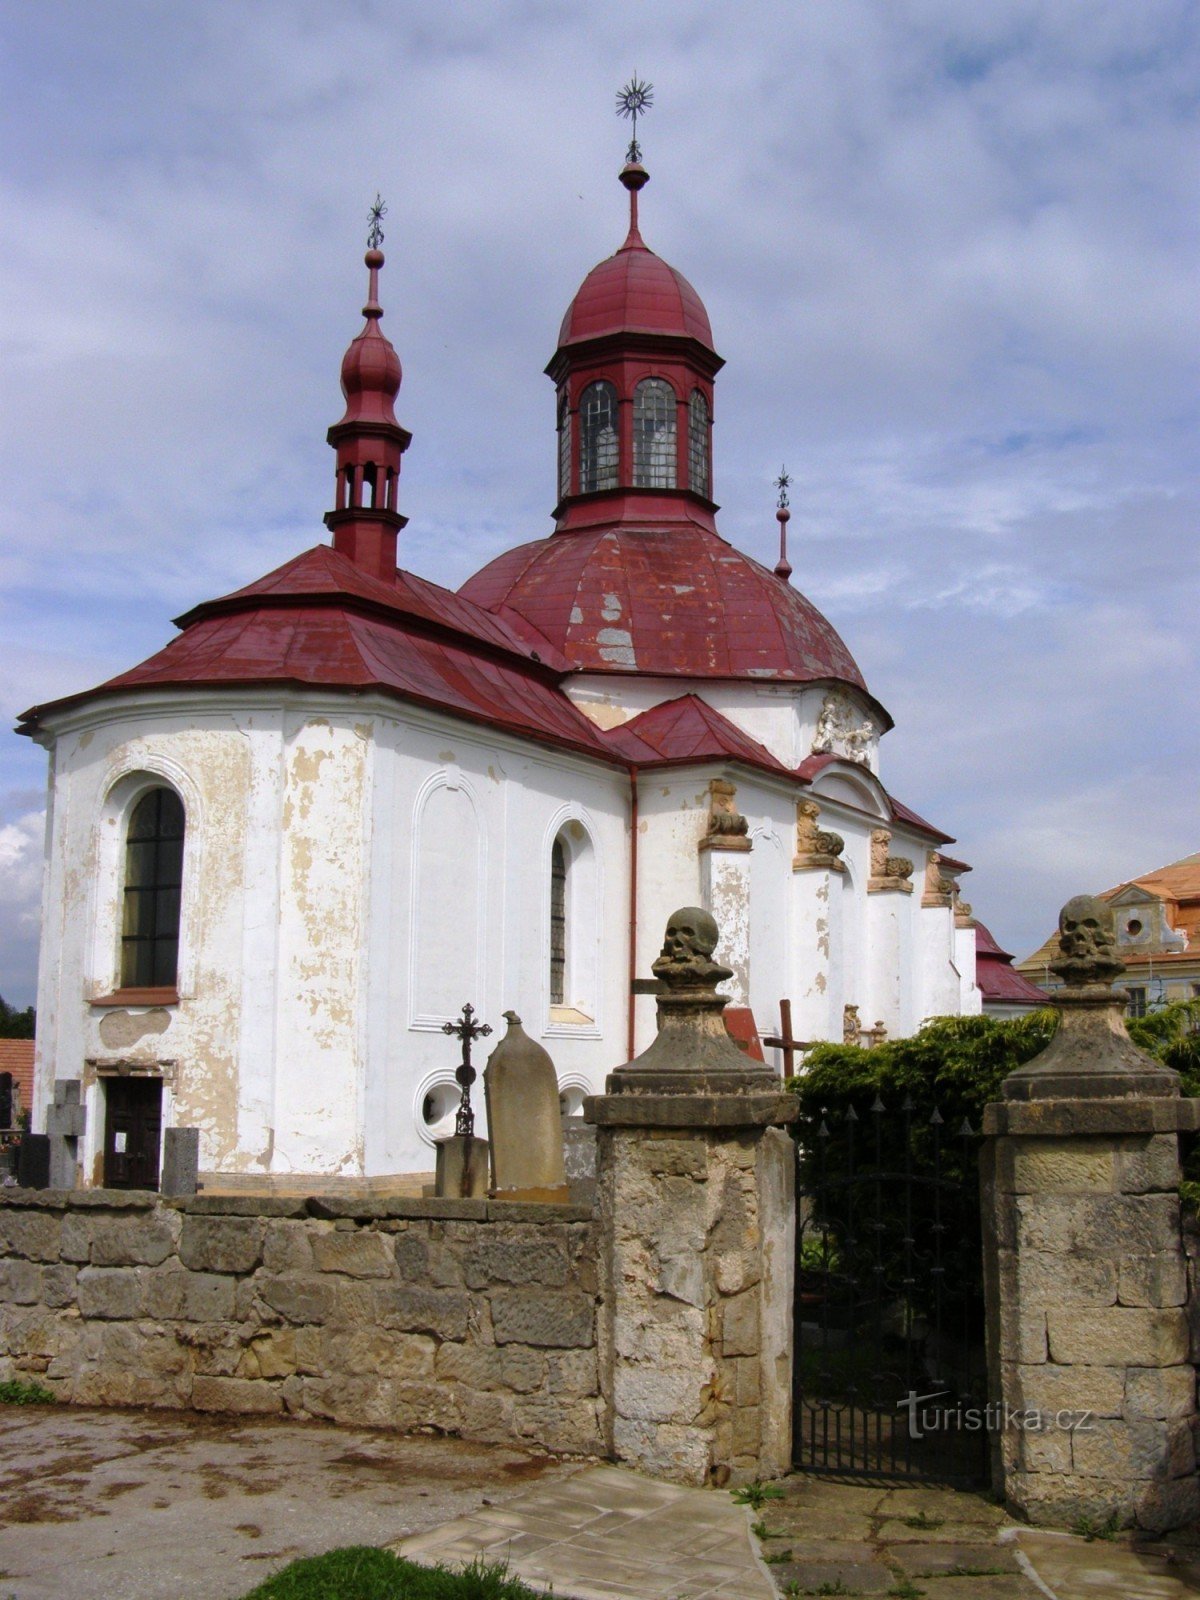 Slatiny - Igreja da Assunção da Virgem Maria